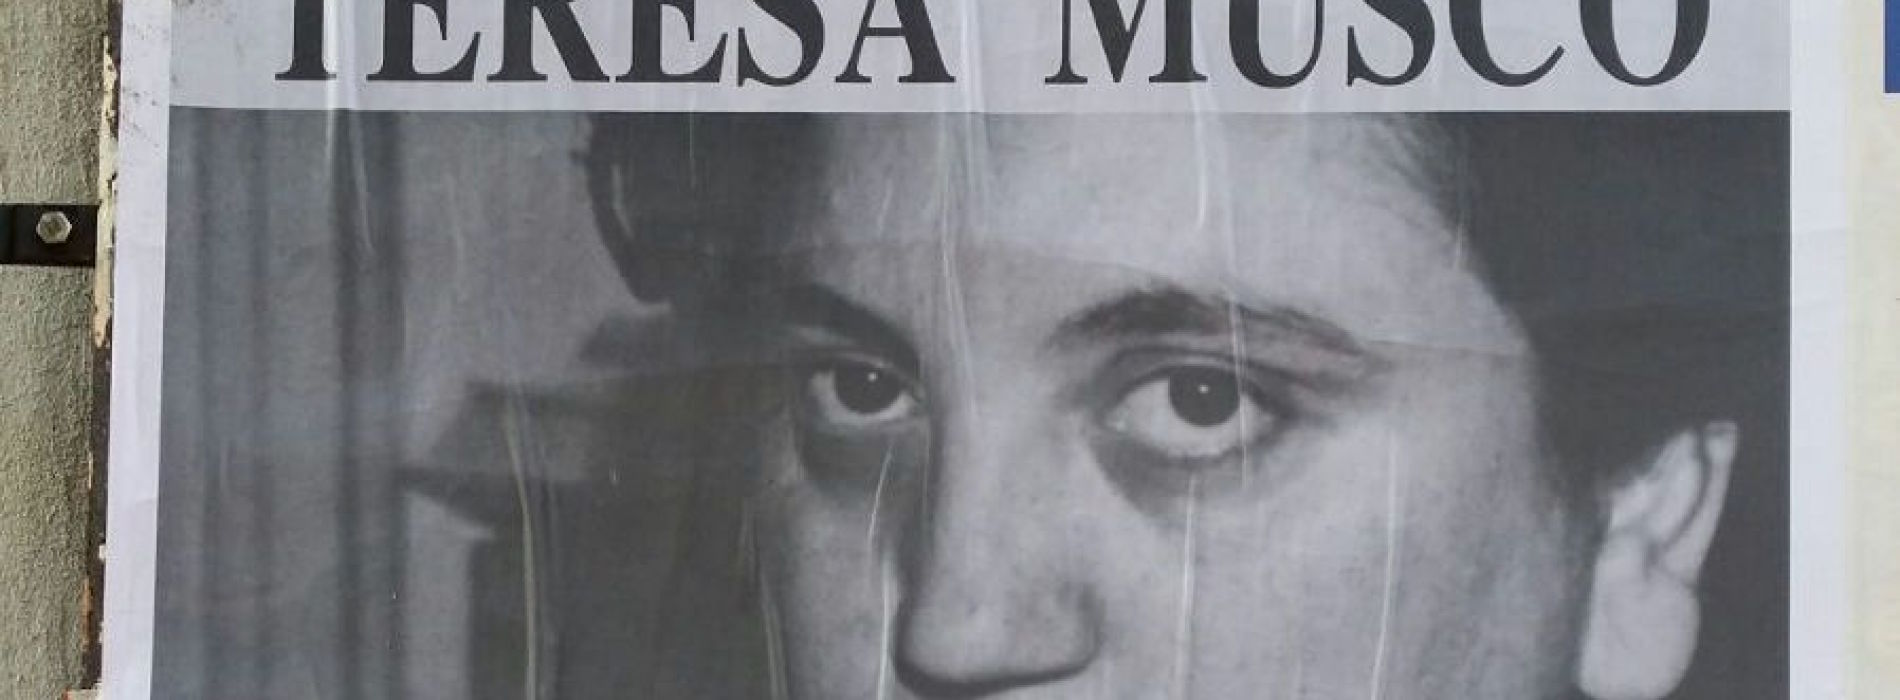 Teresa Musco a 40 anni dalla morte. Resta il mistero